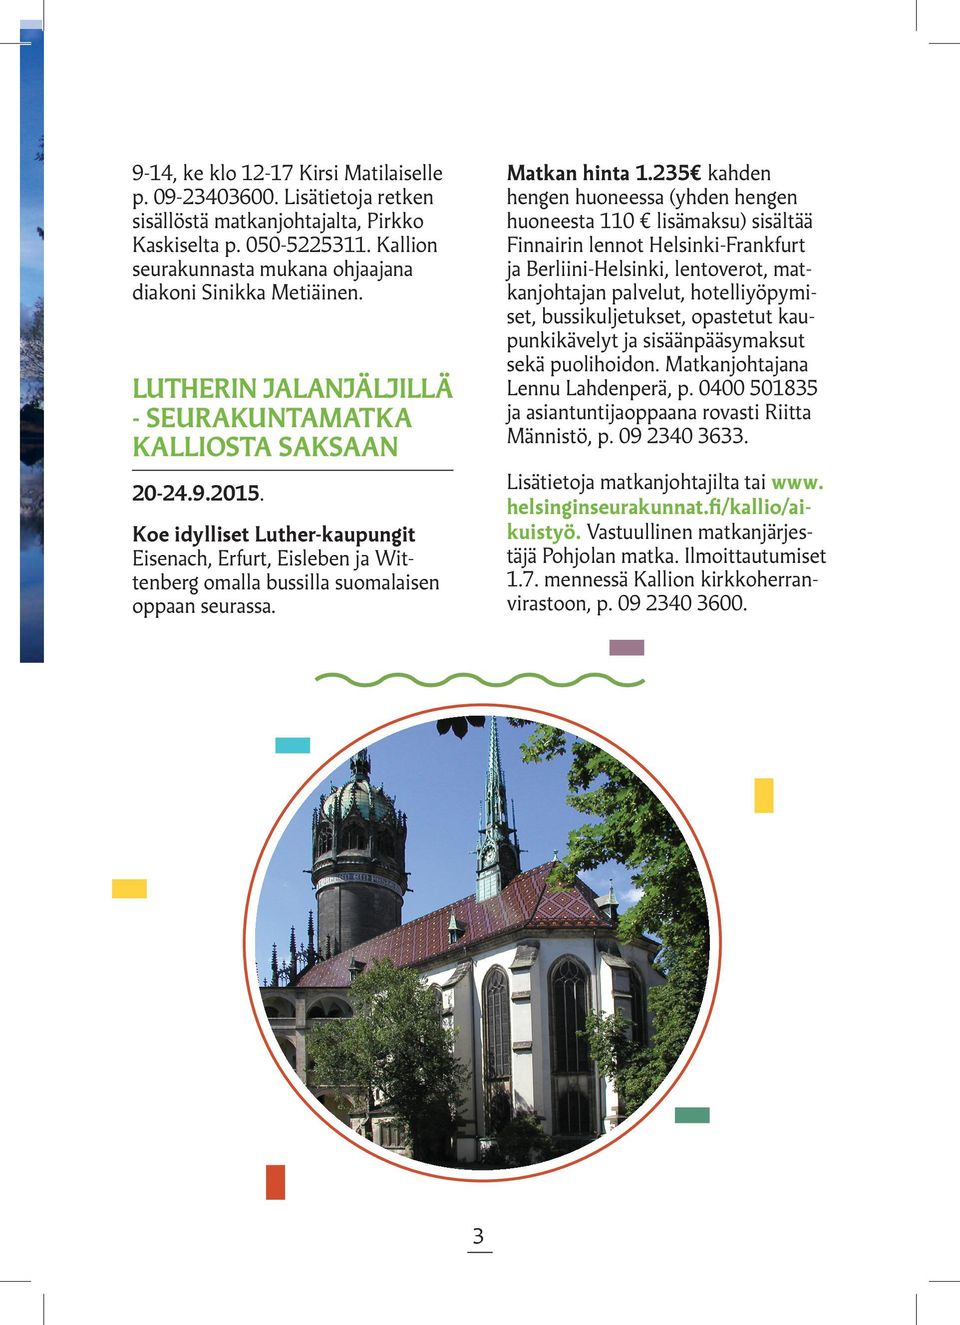 Koe idylliset Luther-kaupungit Eisenach, Erfurt, Eisleben ja Wittenberg omalla bussilla suomalaisen oppaan seurassa. Matkan hinta 1.